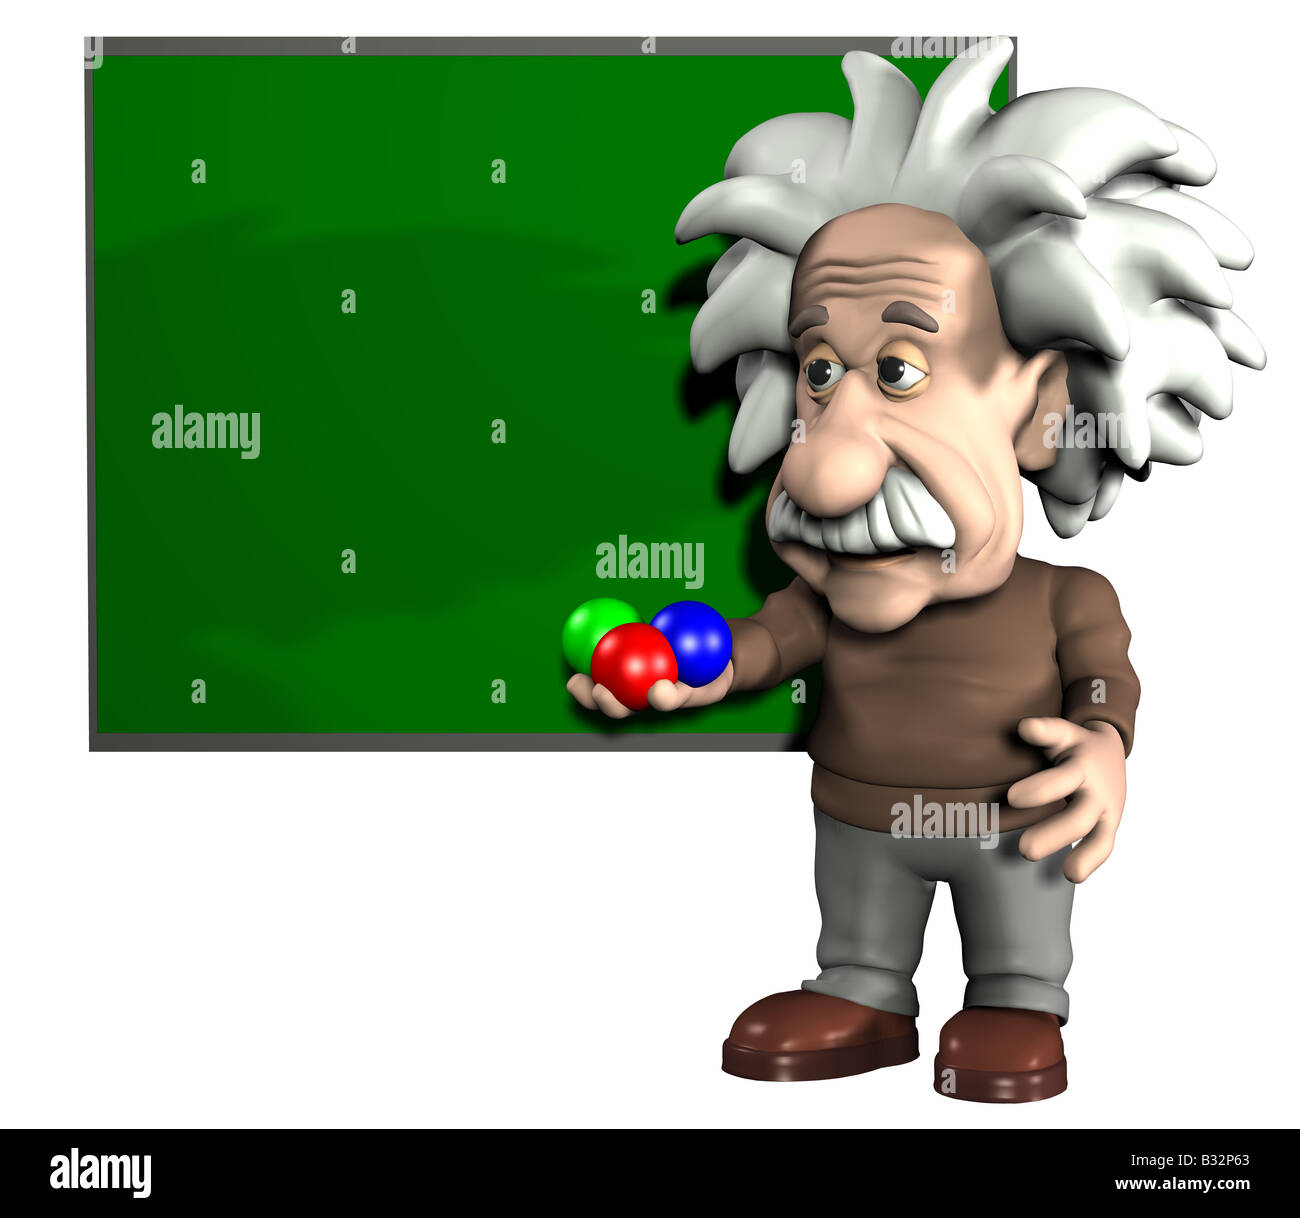 Albert Einstein in front of a board Stock Photo